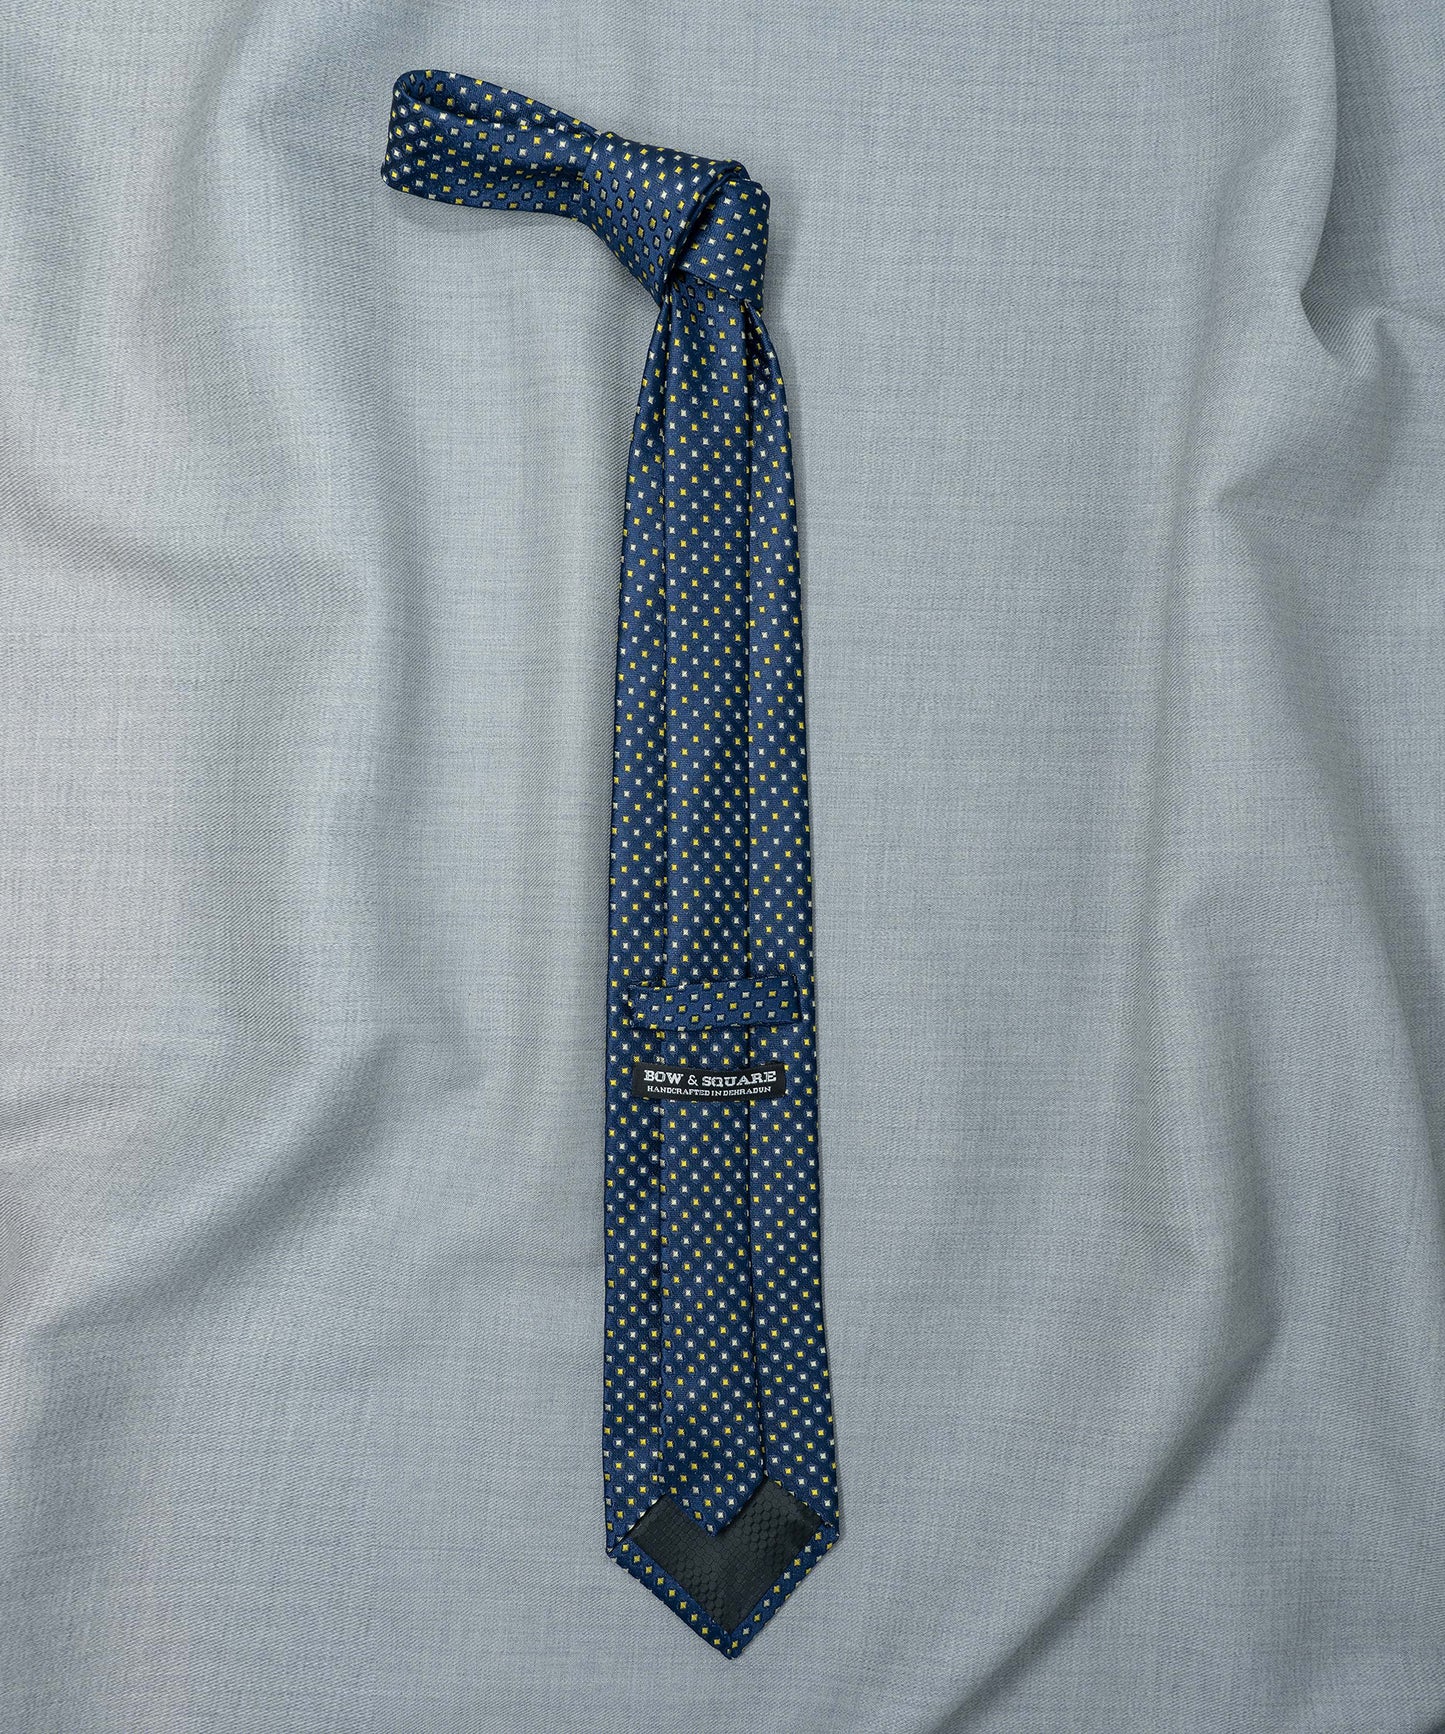 Old School Necktie